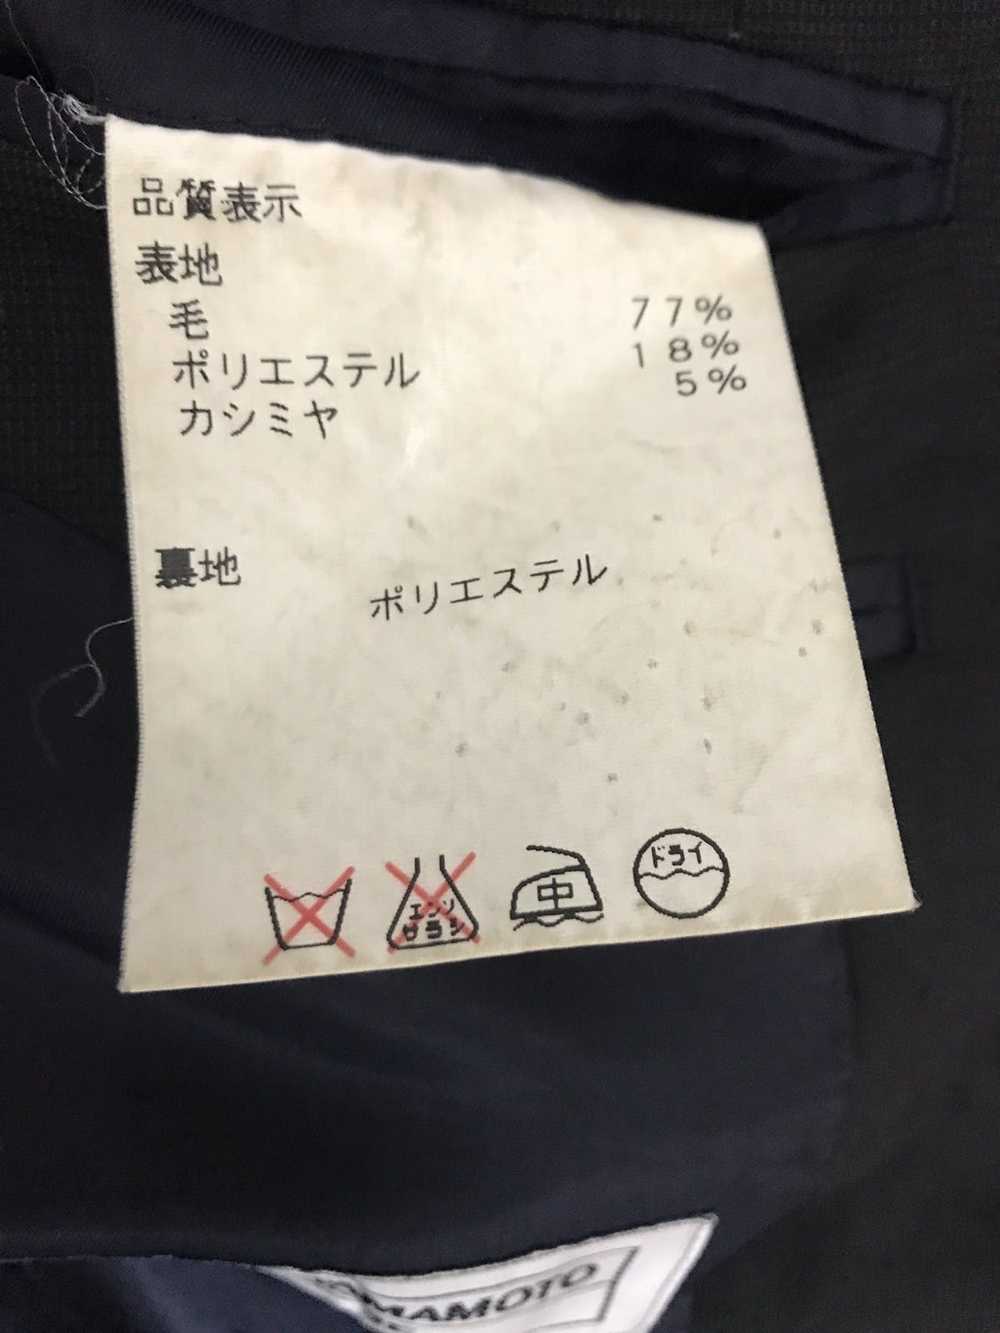 Jacket Kansai Yamamoto Pink size M International in Cotton - 23543880